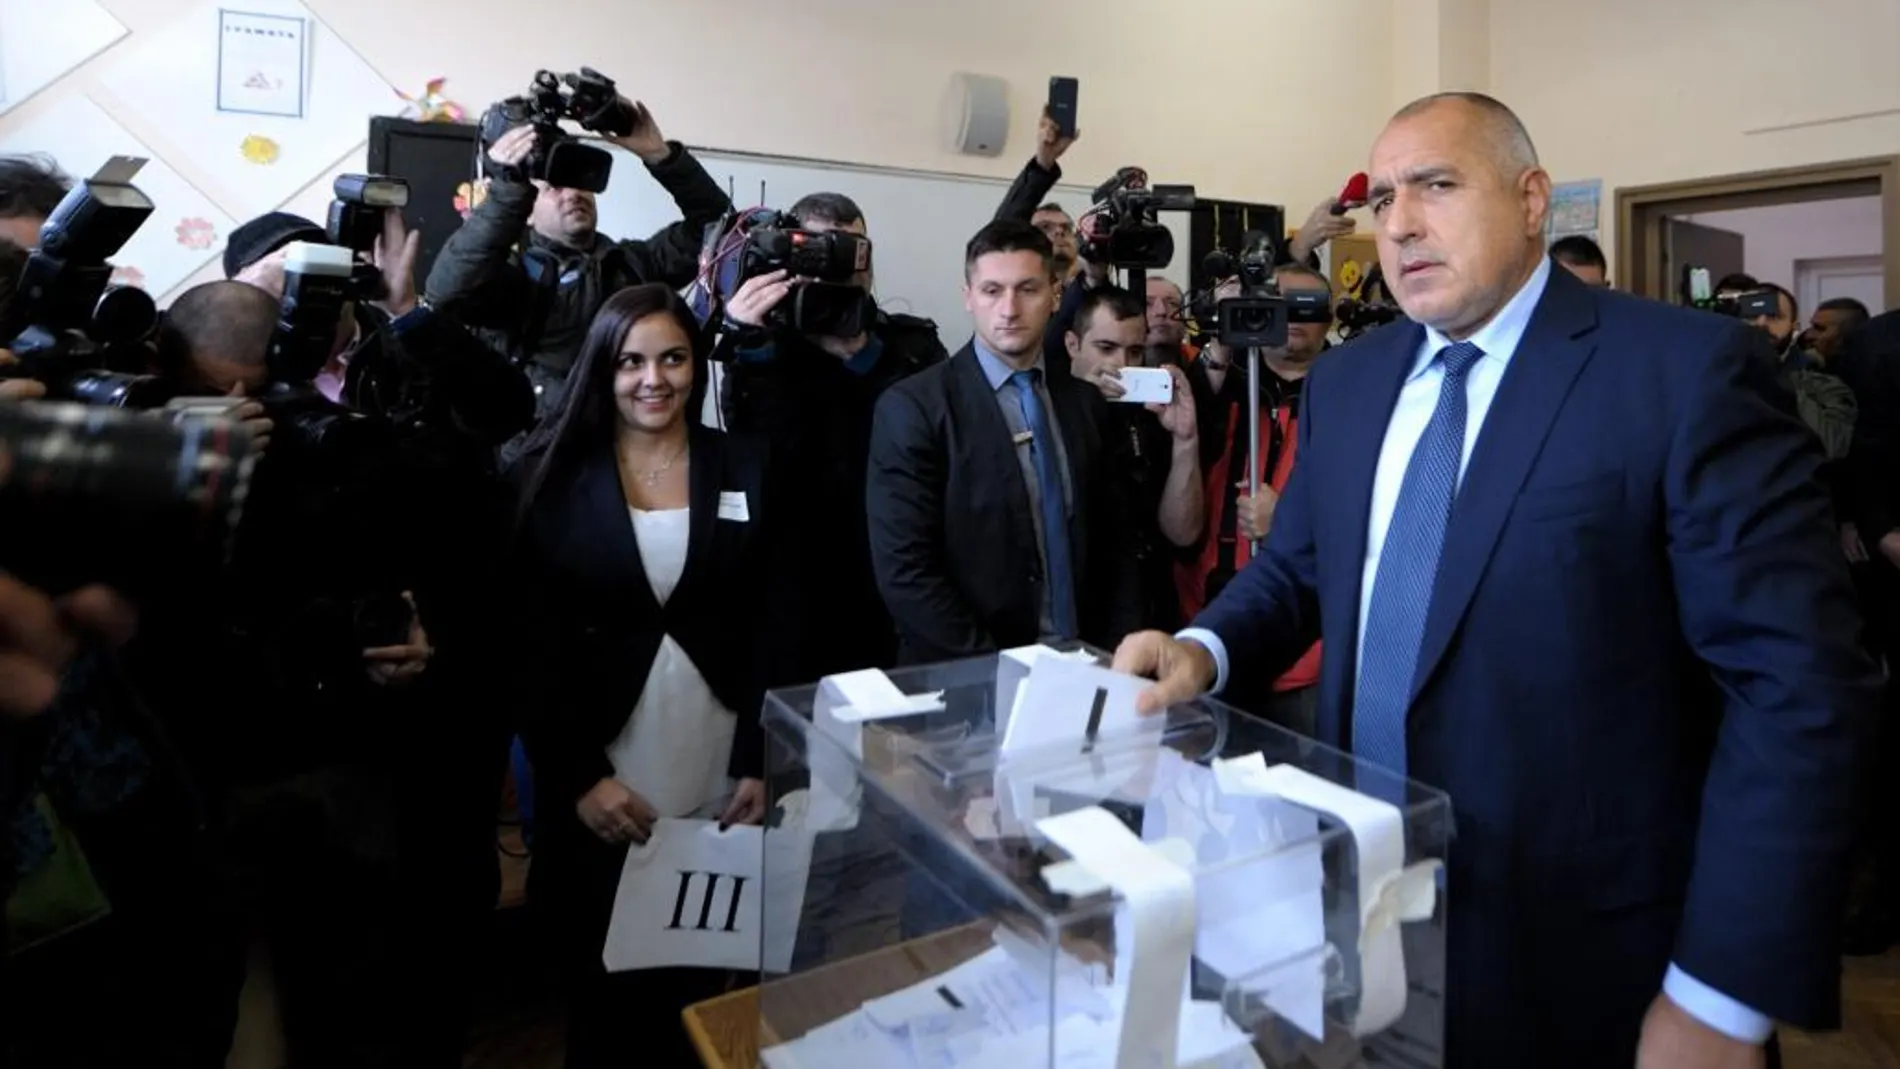 El primer ministro búlgaro Boyko Borisov deposita su voto hoy en Sofía.